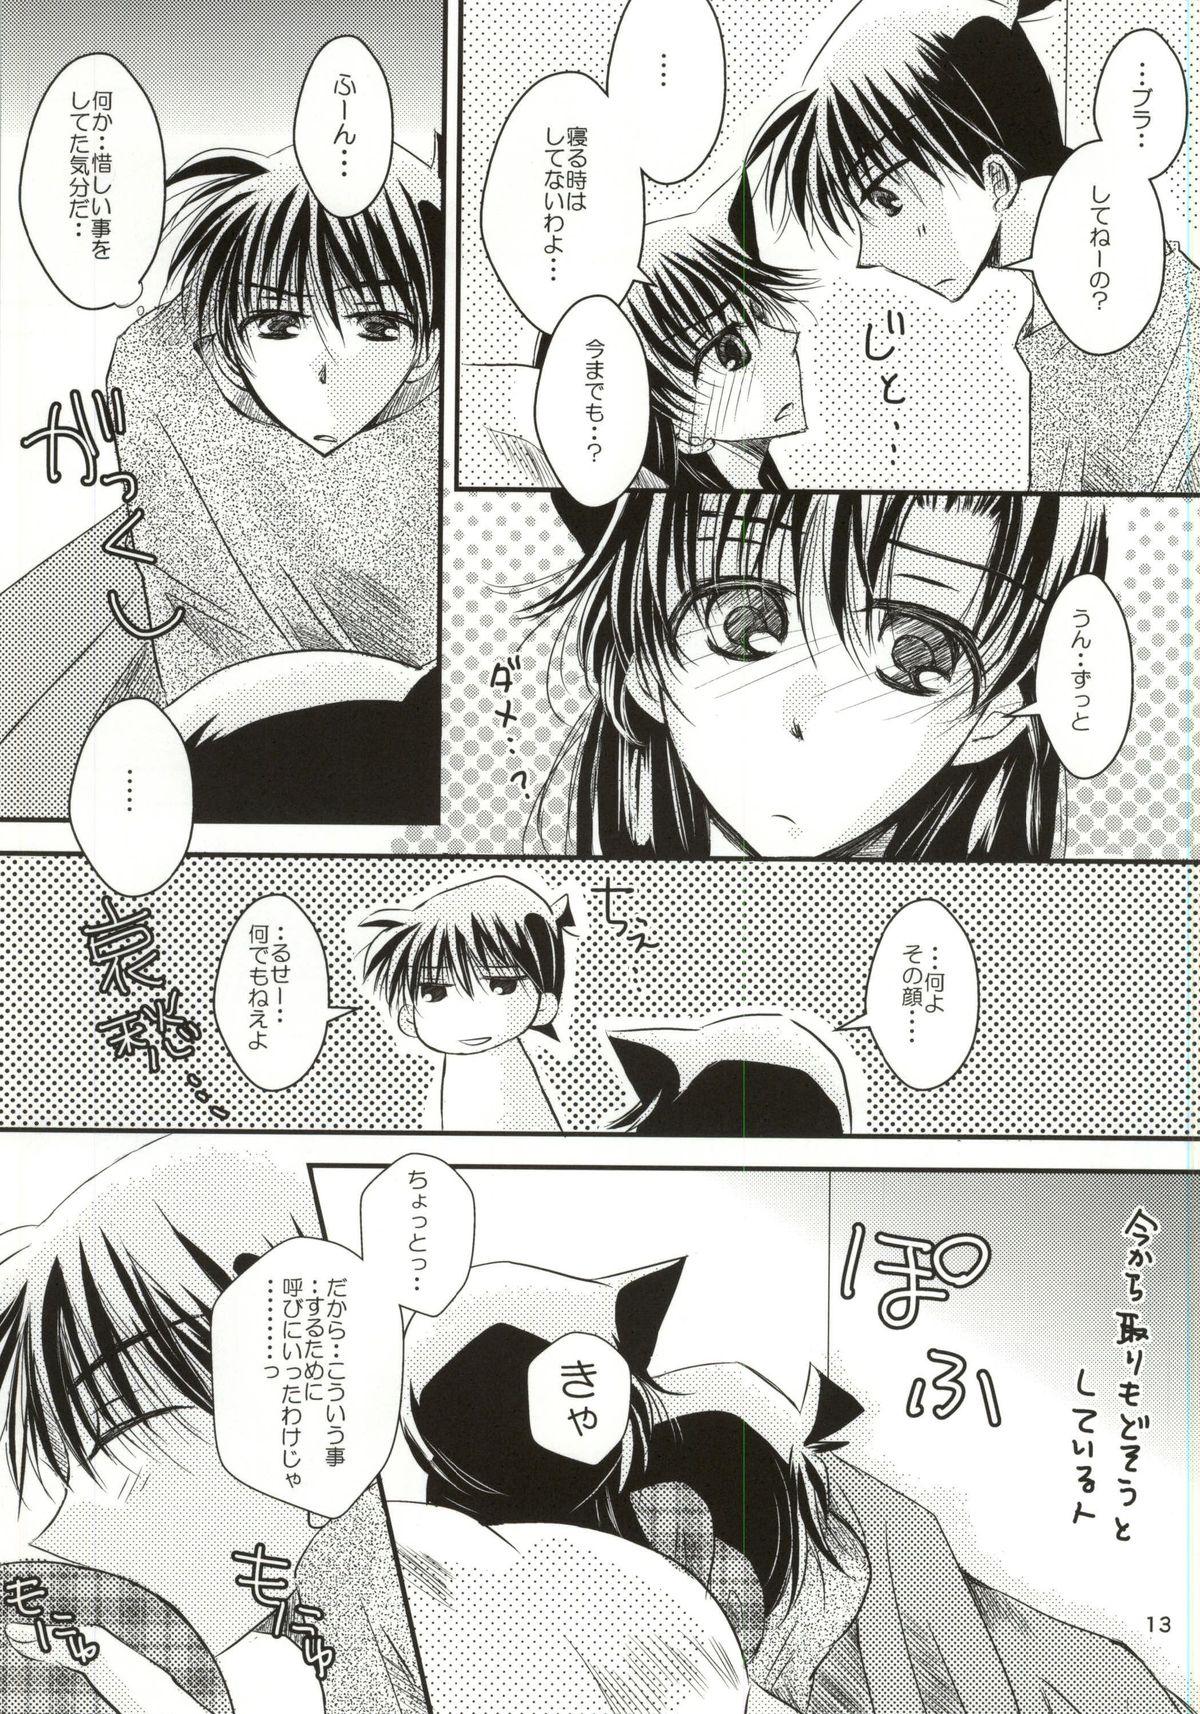 Furry Yoru no Uchi ni - Detective conan Spoon - Page 10